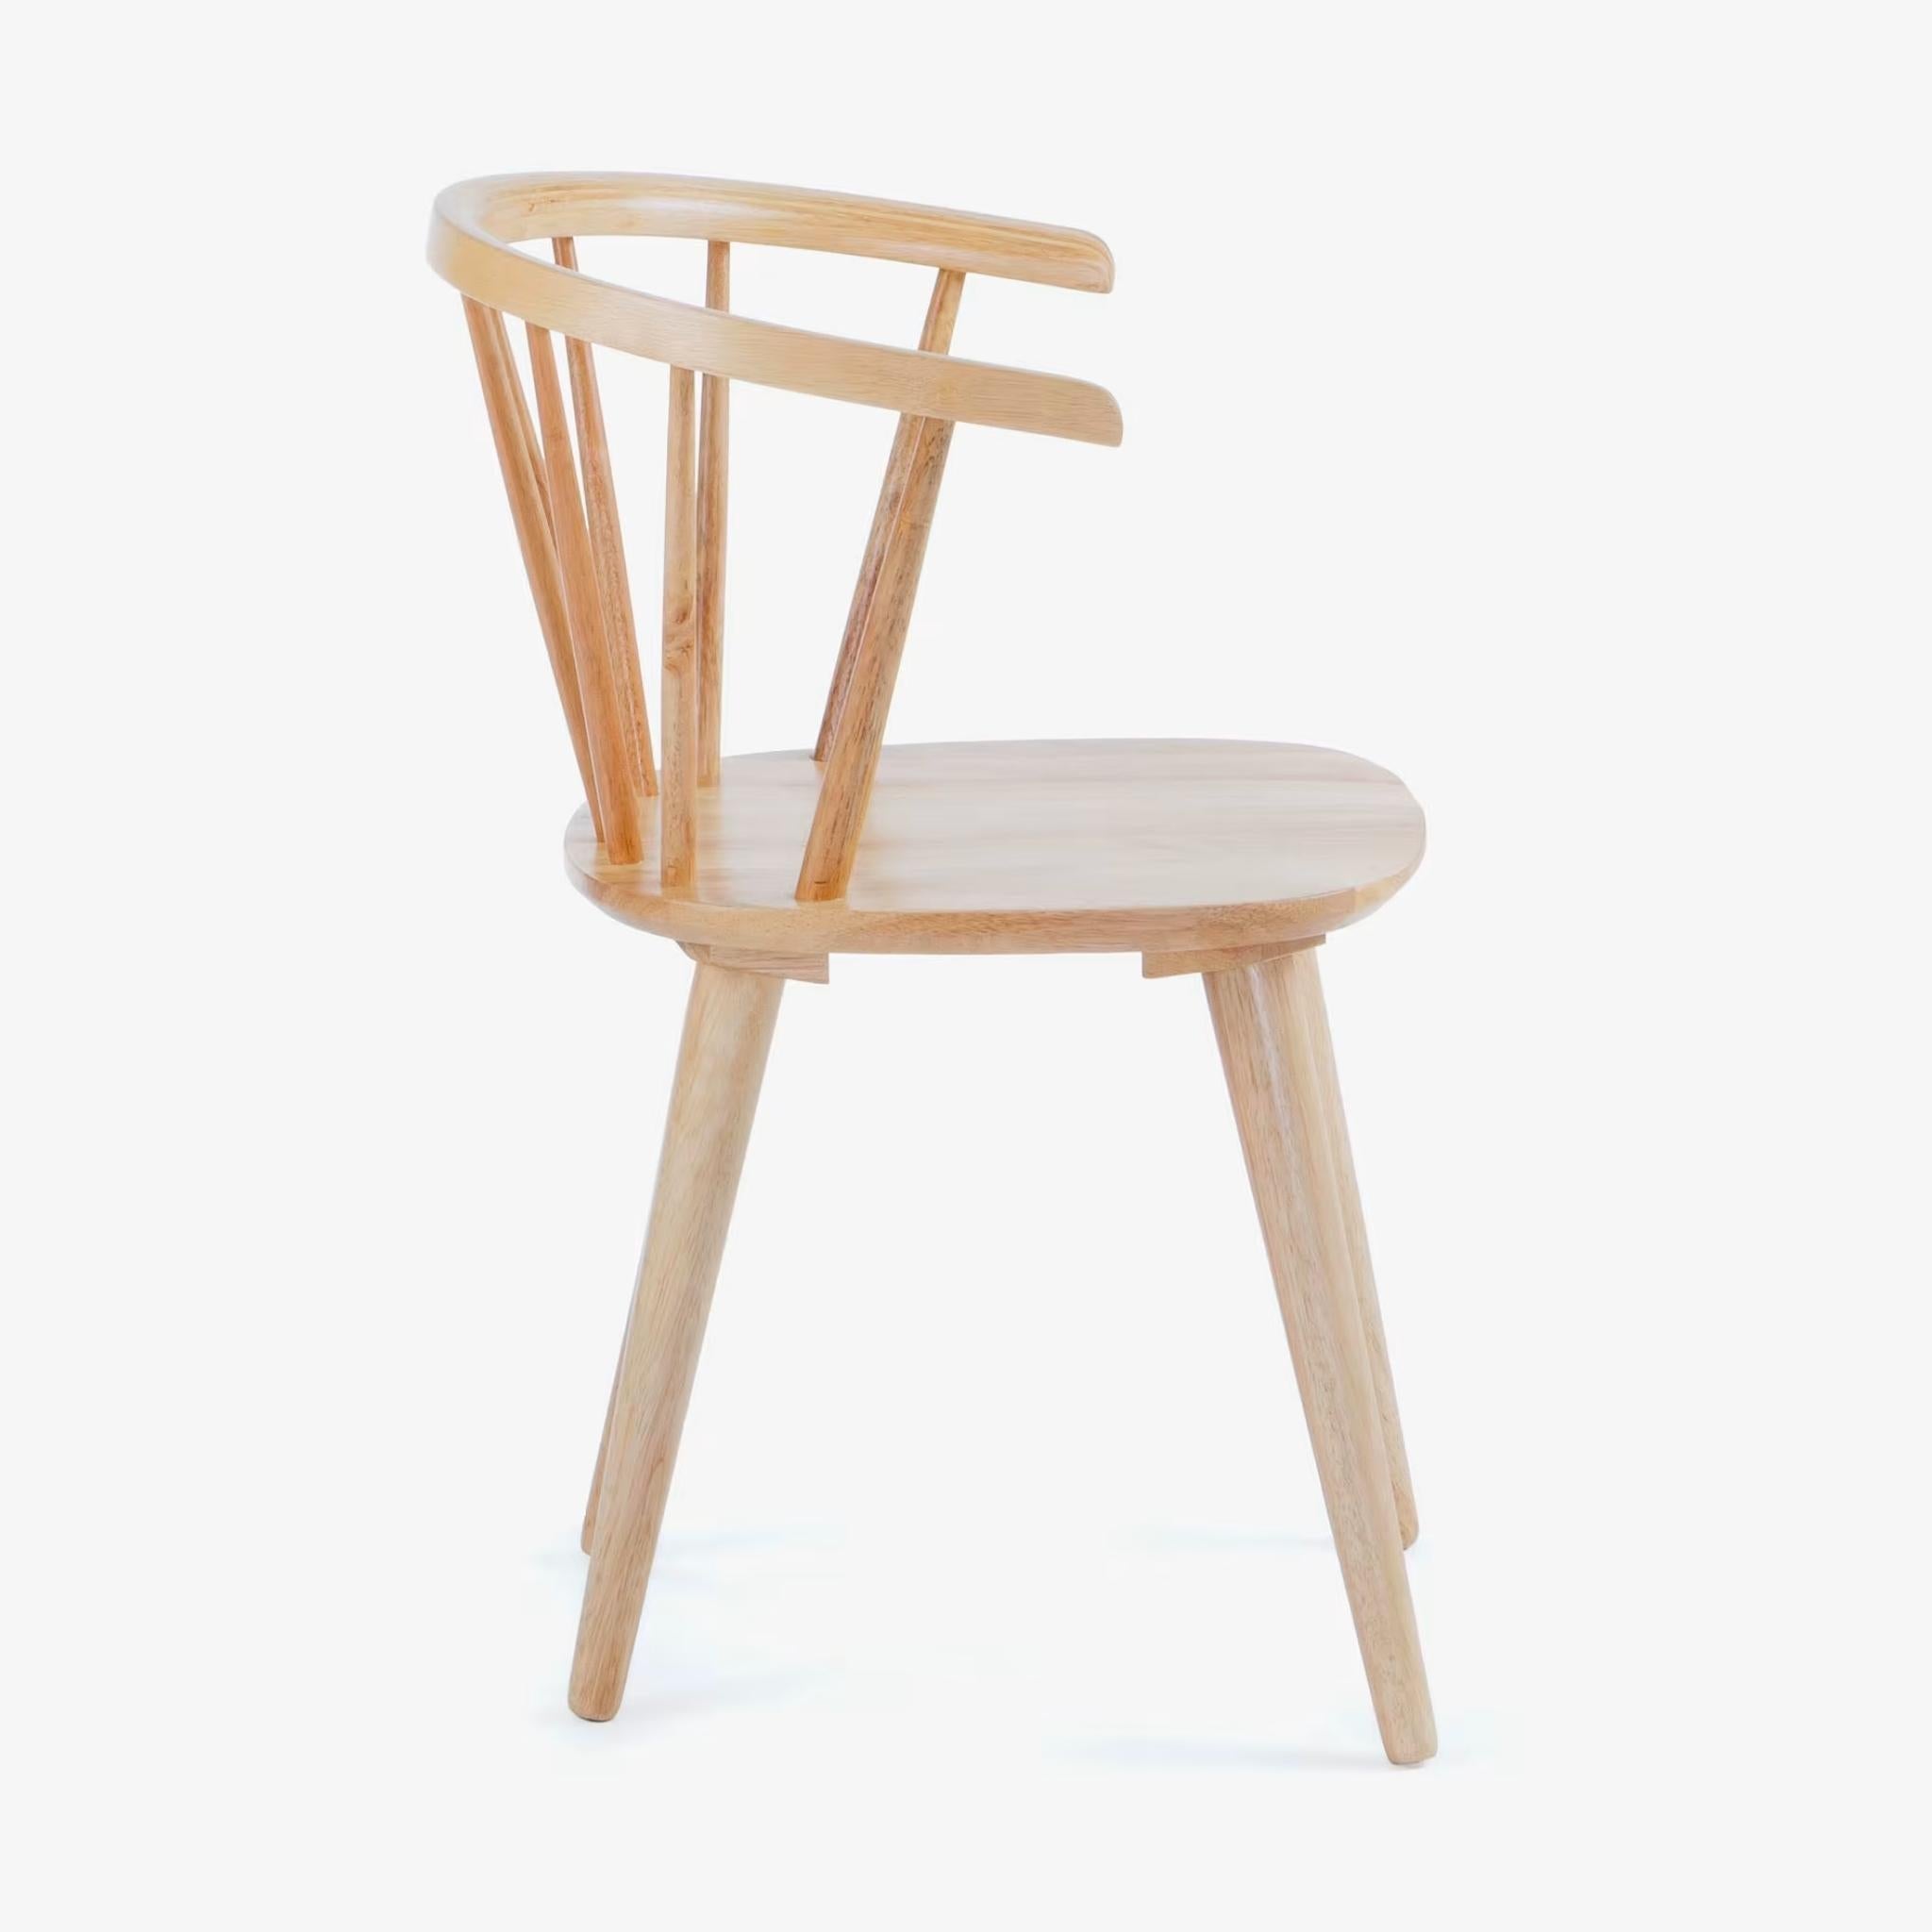 Kave Home Trise Stuhl - Farbe Natur - SKU #CC0219M46 - weißer Hintergrund seitlich